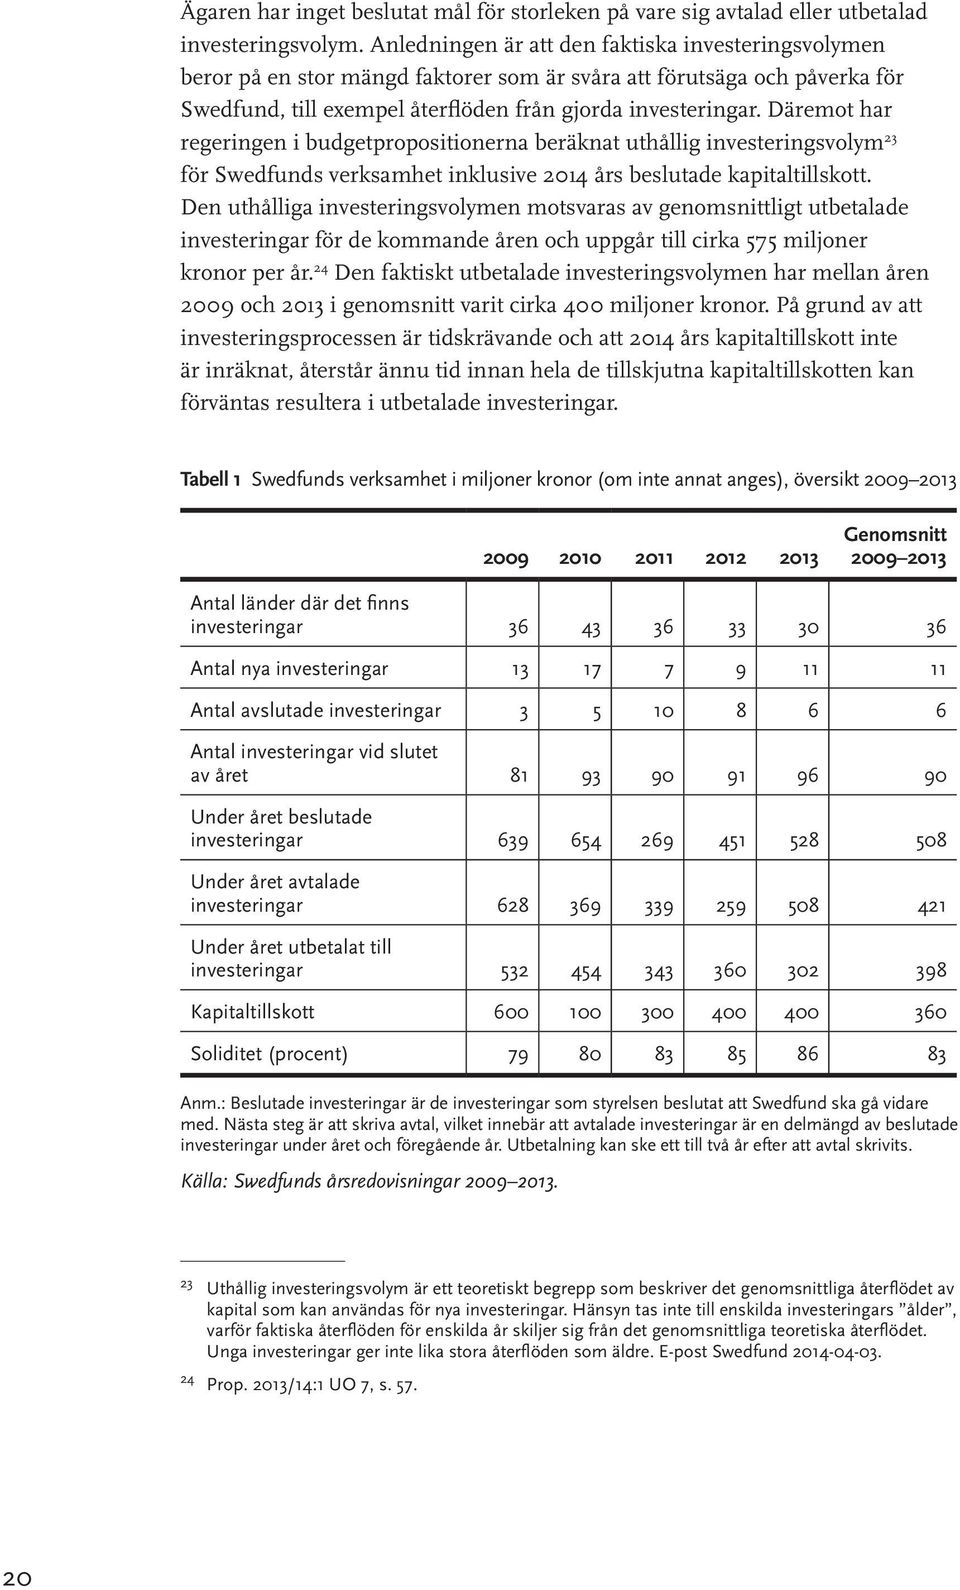 Däremot har regeringen i budgetpropositionerna beräknat uthållig investeringsvolym 23 för Swedfunds verksamhet inklusive 2014 års beslutade kapitaltillskott.